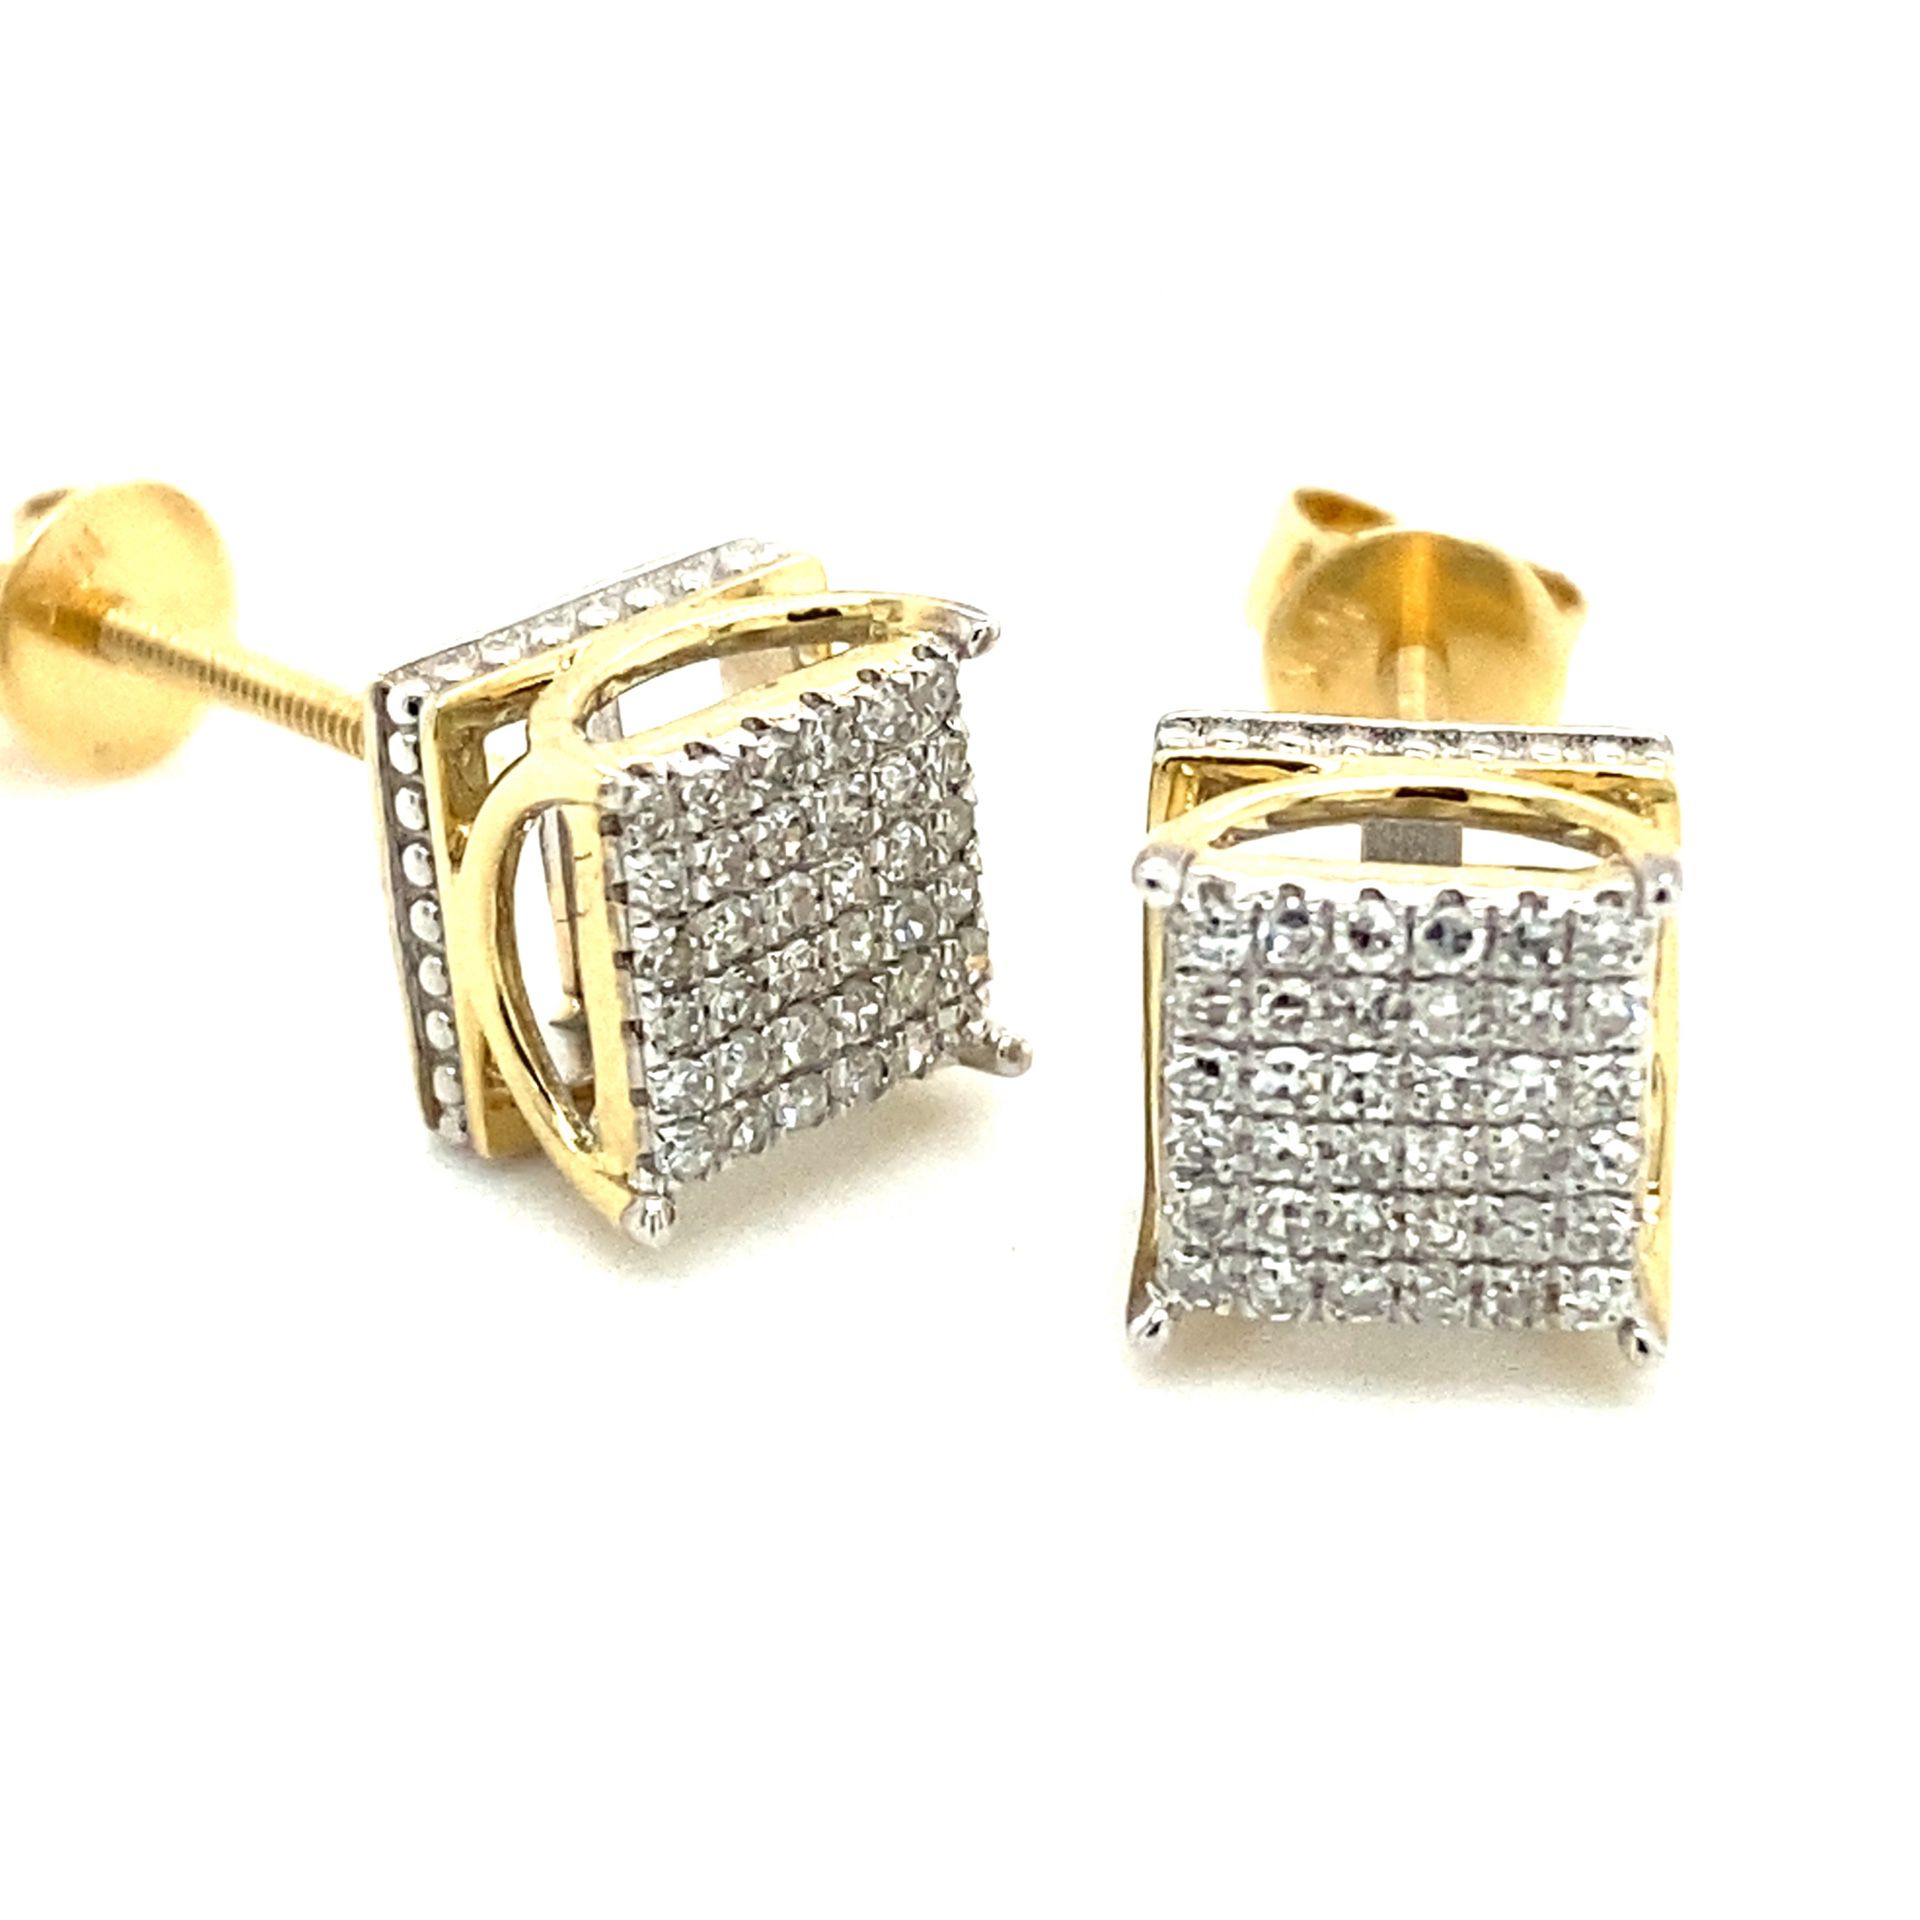 10k Gold Square Diamond Cluster Earrings .2ctw 133621 2